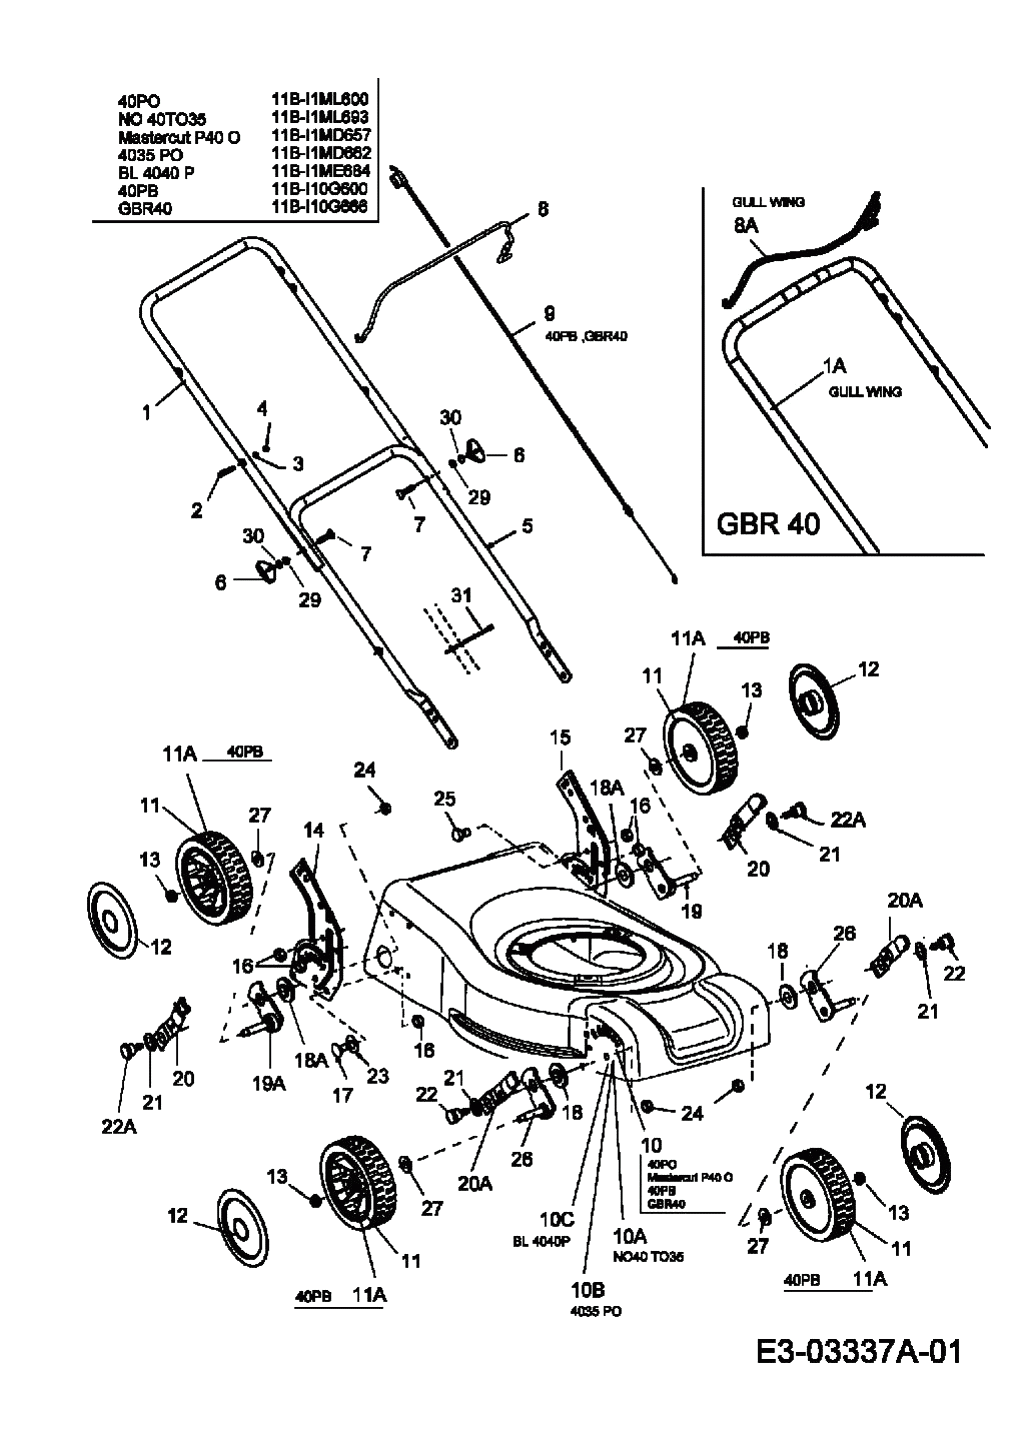 MTD Артикул 11B-I10G600 (год выпуска 2007). Ручка, колеса, регулятор высоты реза